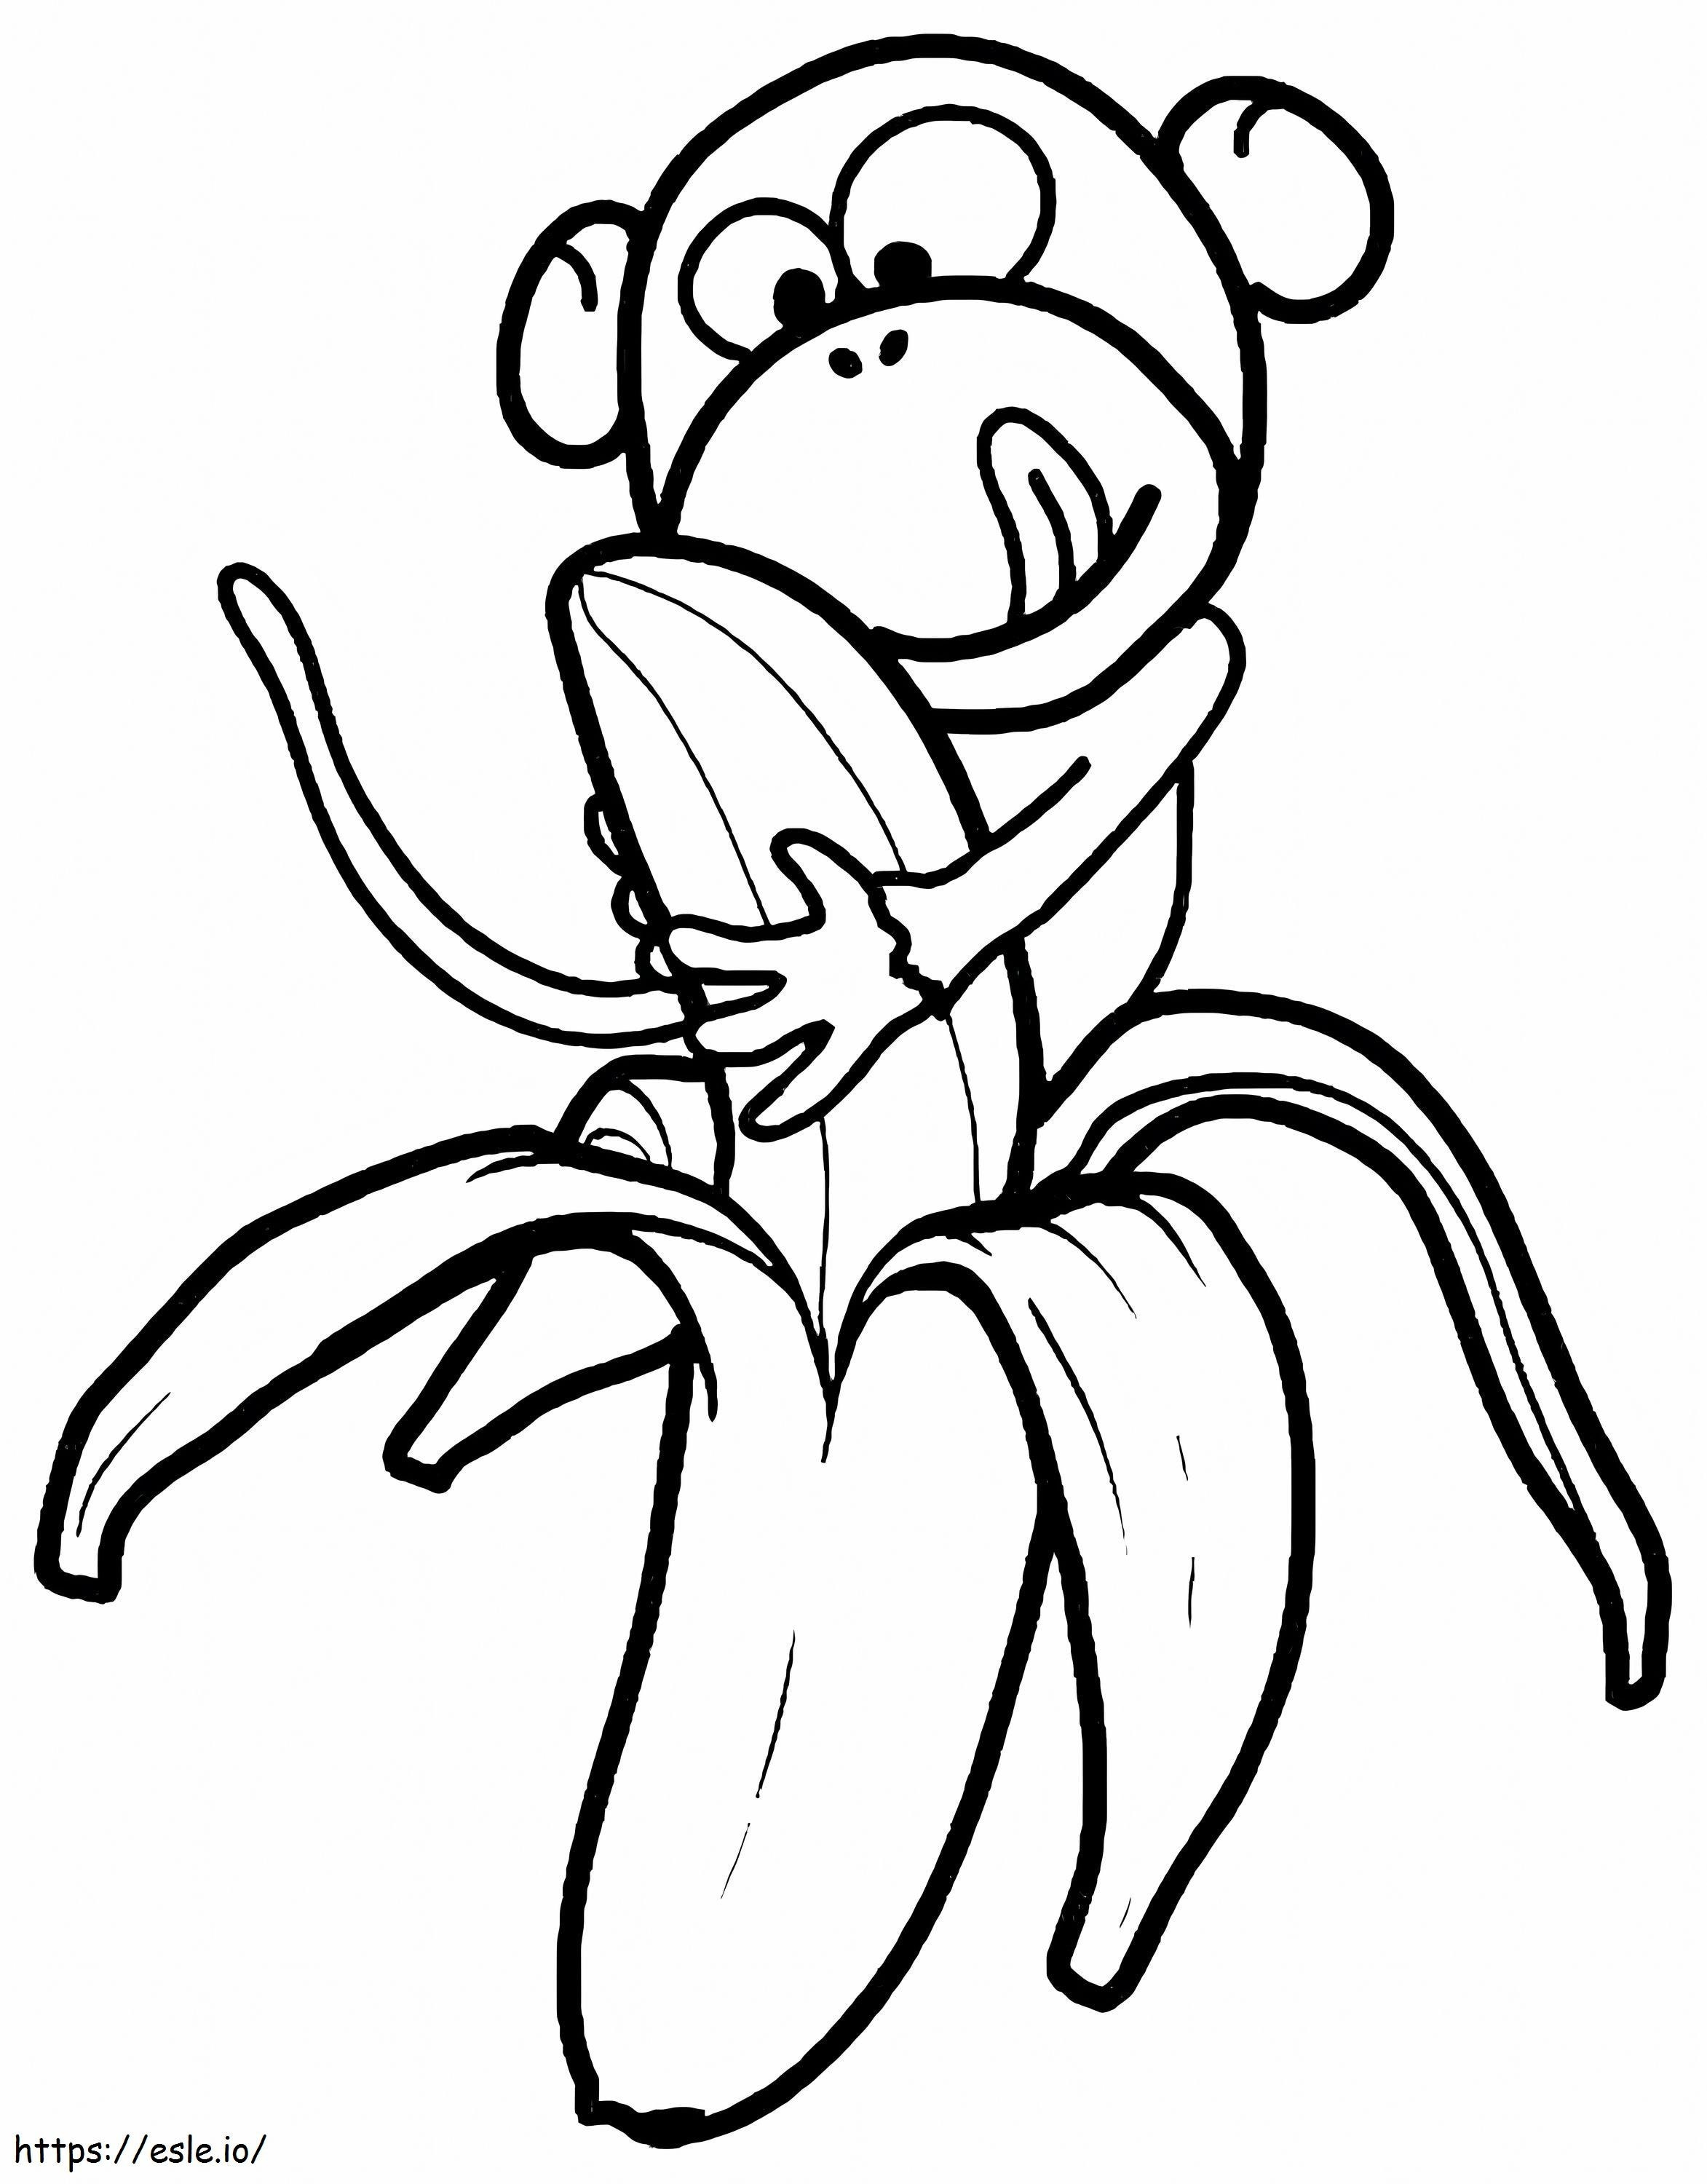 Coloriage Singe facile mangeant une banane à imprimer dessin